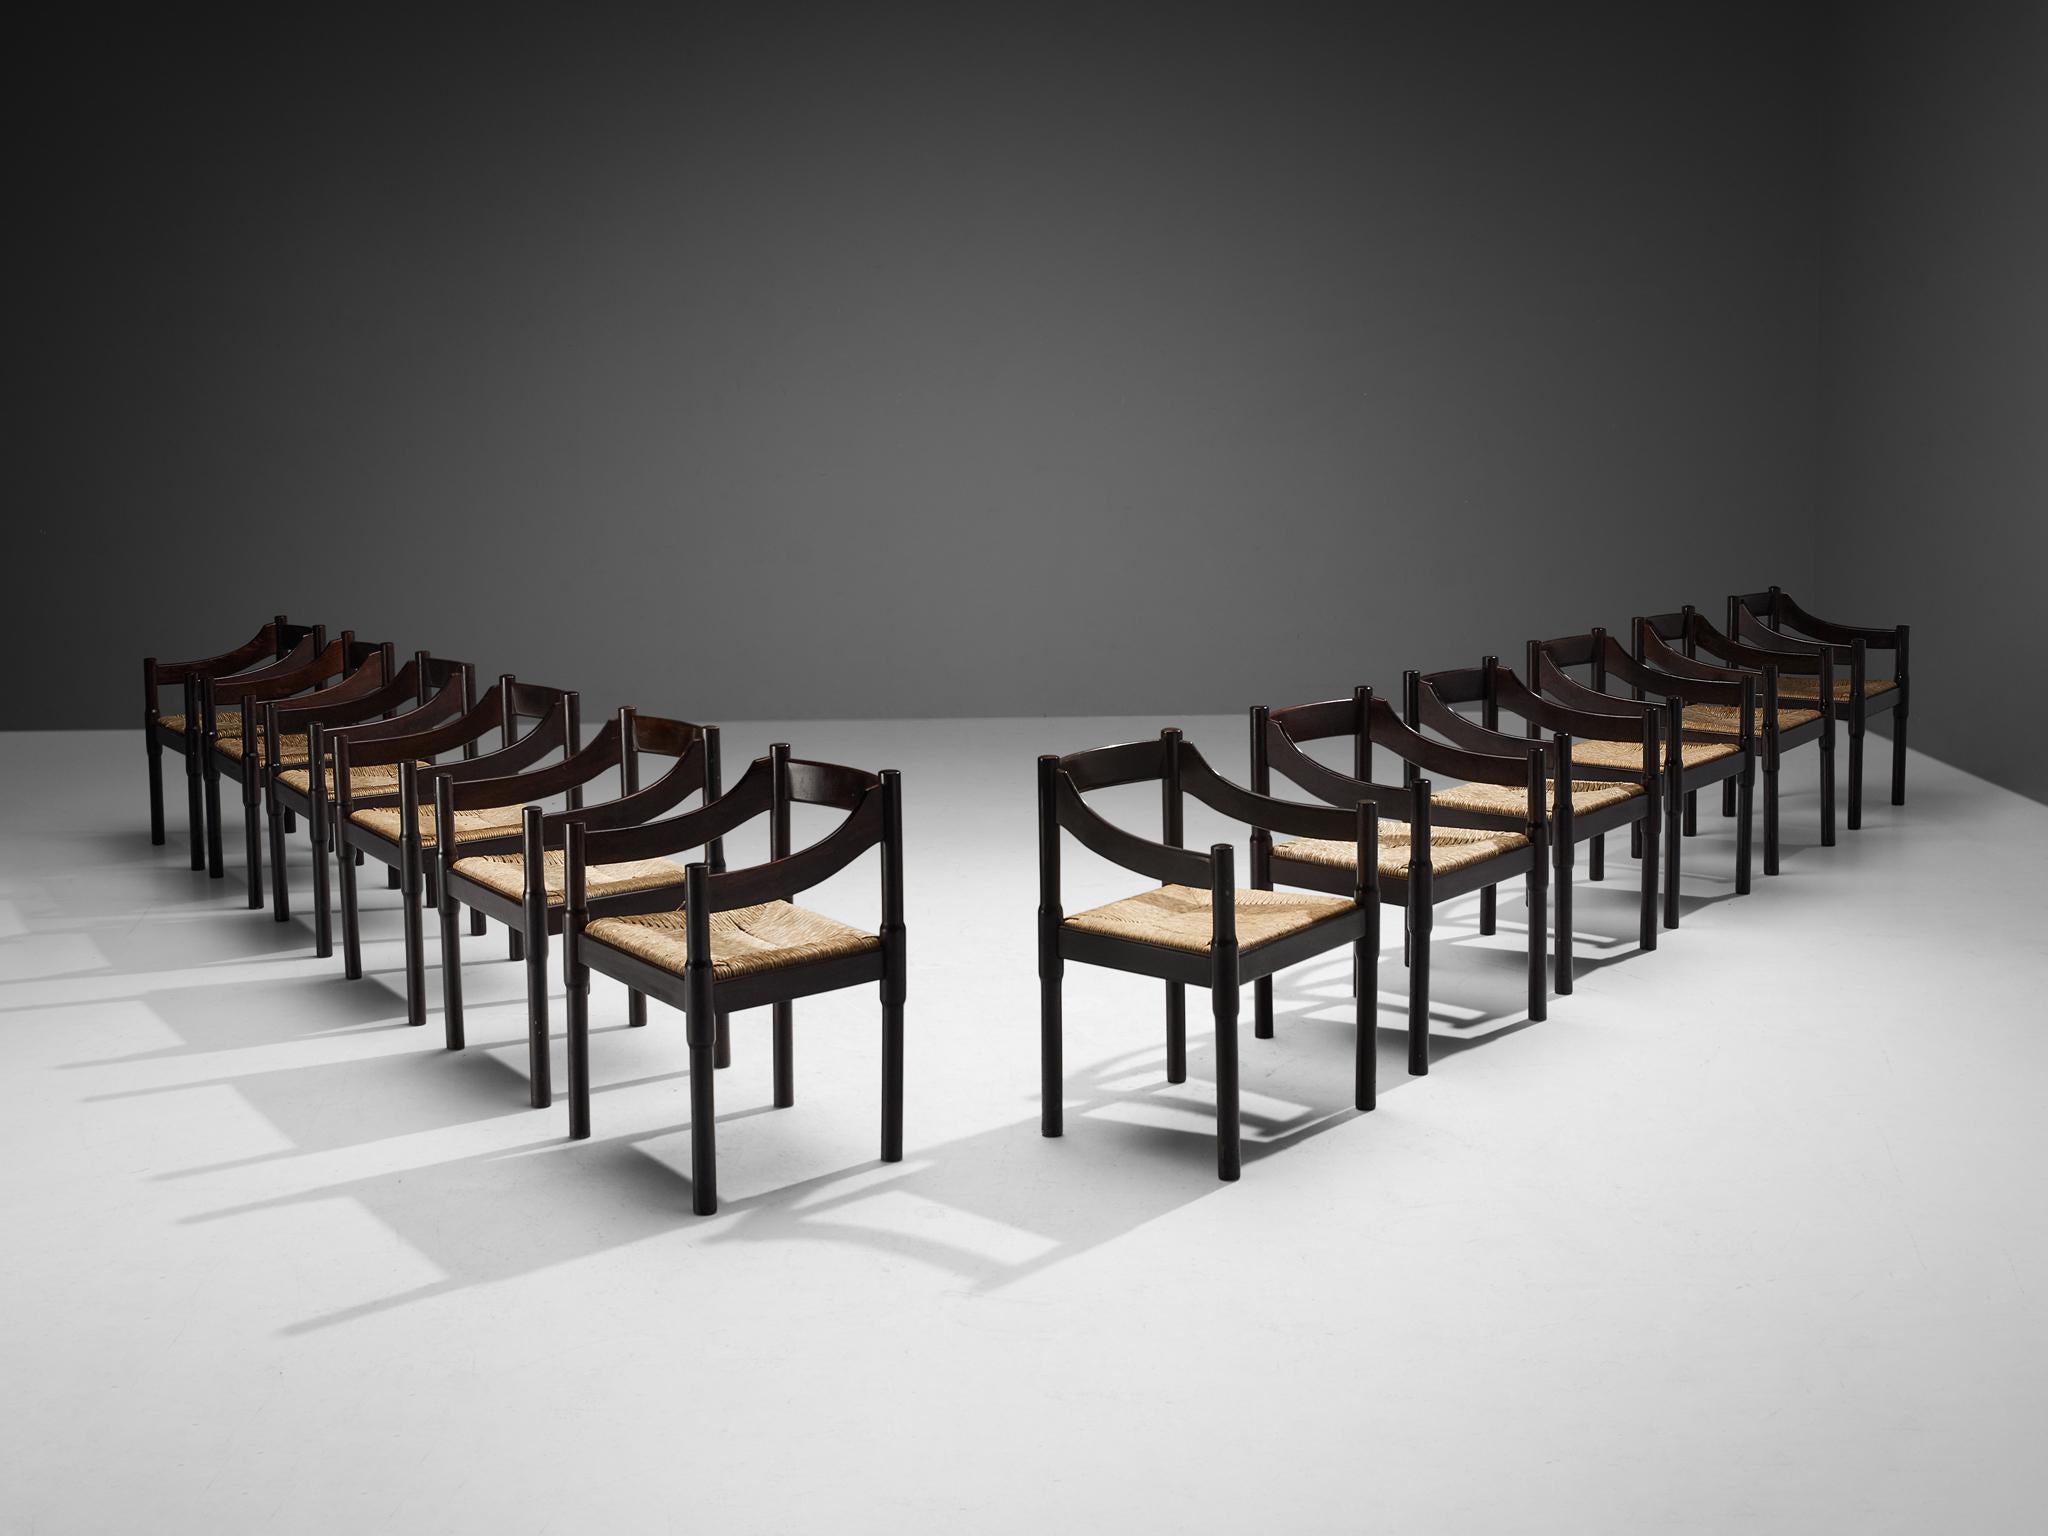 Vico Magistretti, Satz von zwölf Esszimmerstühlen Modell 'Carimate', gebeizte Buche, Strohgeflecht, Italien, Entwurf um 1960

Der Stuhl 